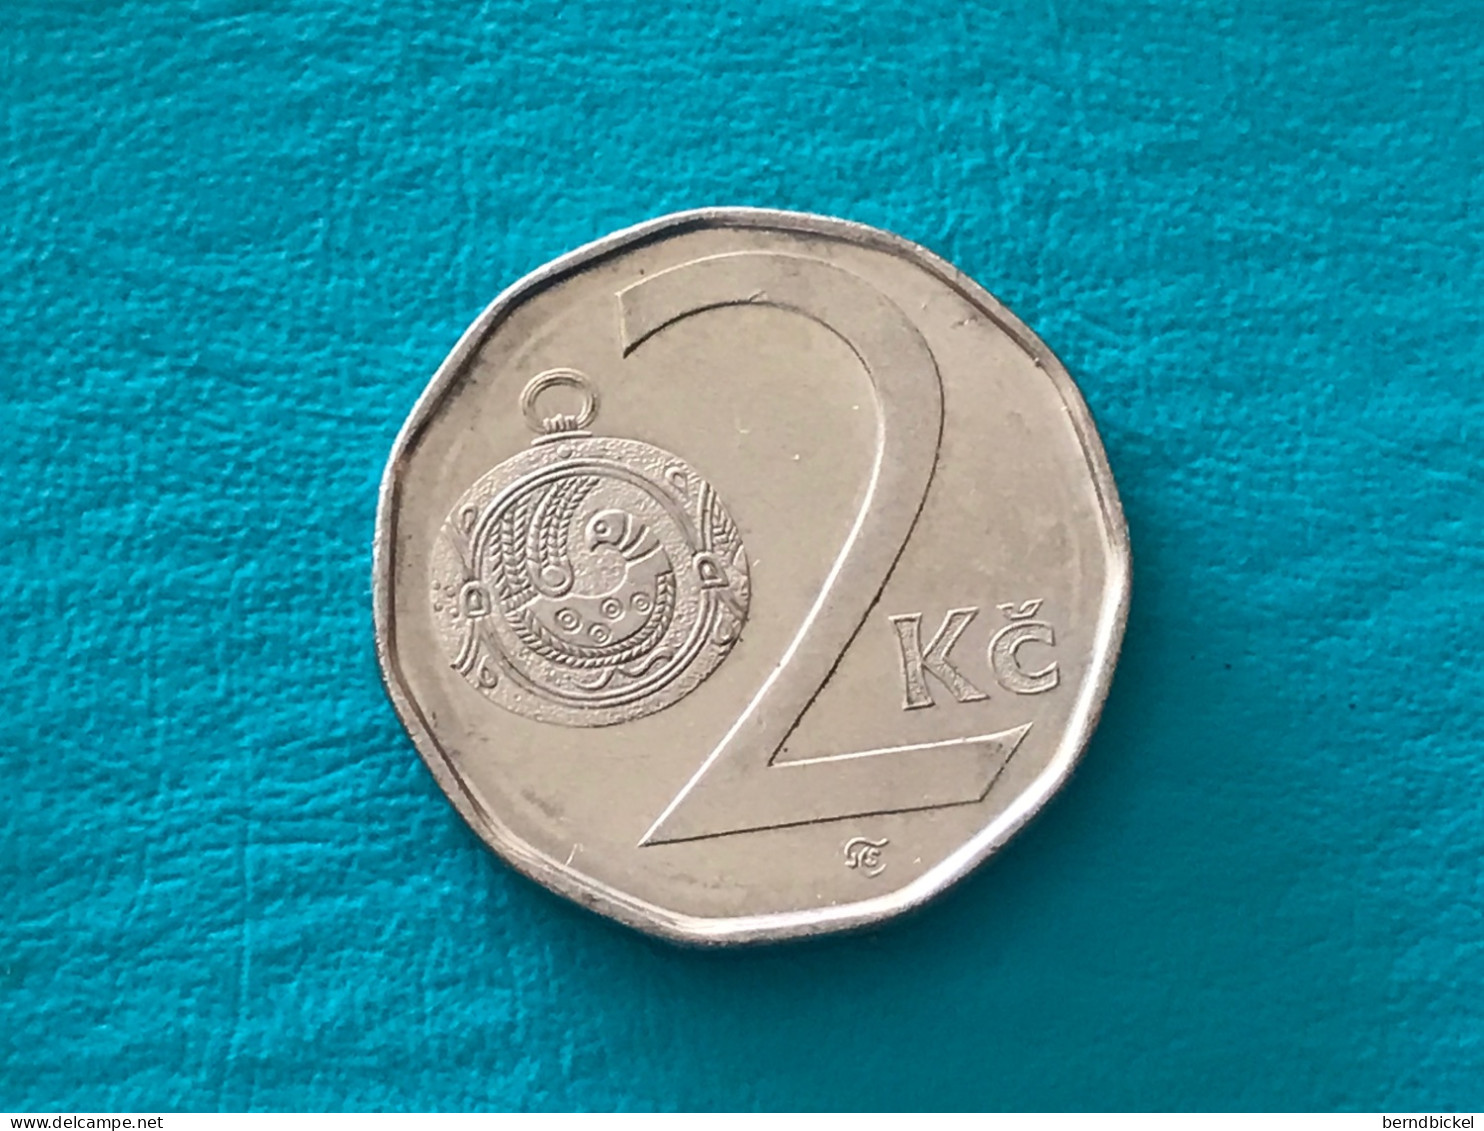 Münze Münzen Umlaufmünze Tschechien 2 Koruna 2001 - Tsjechië